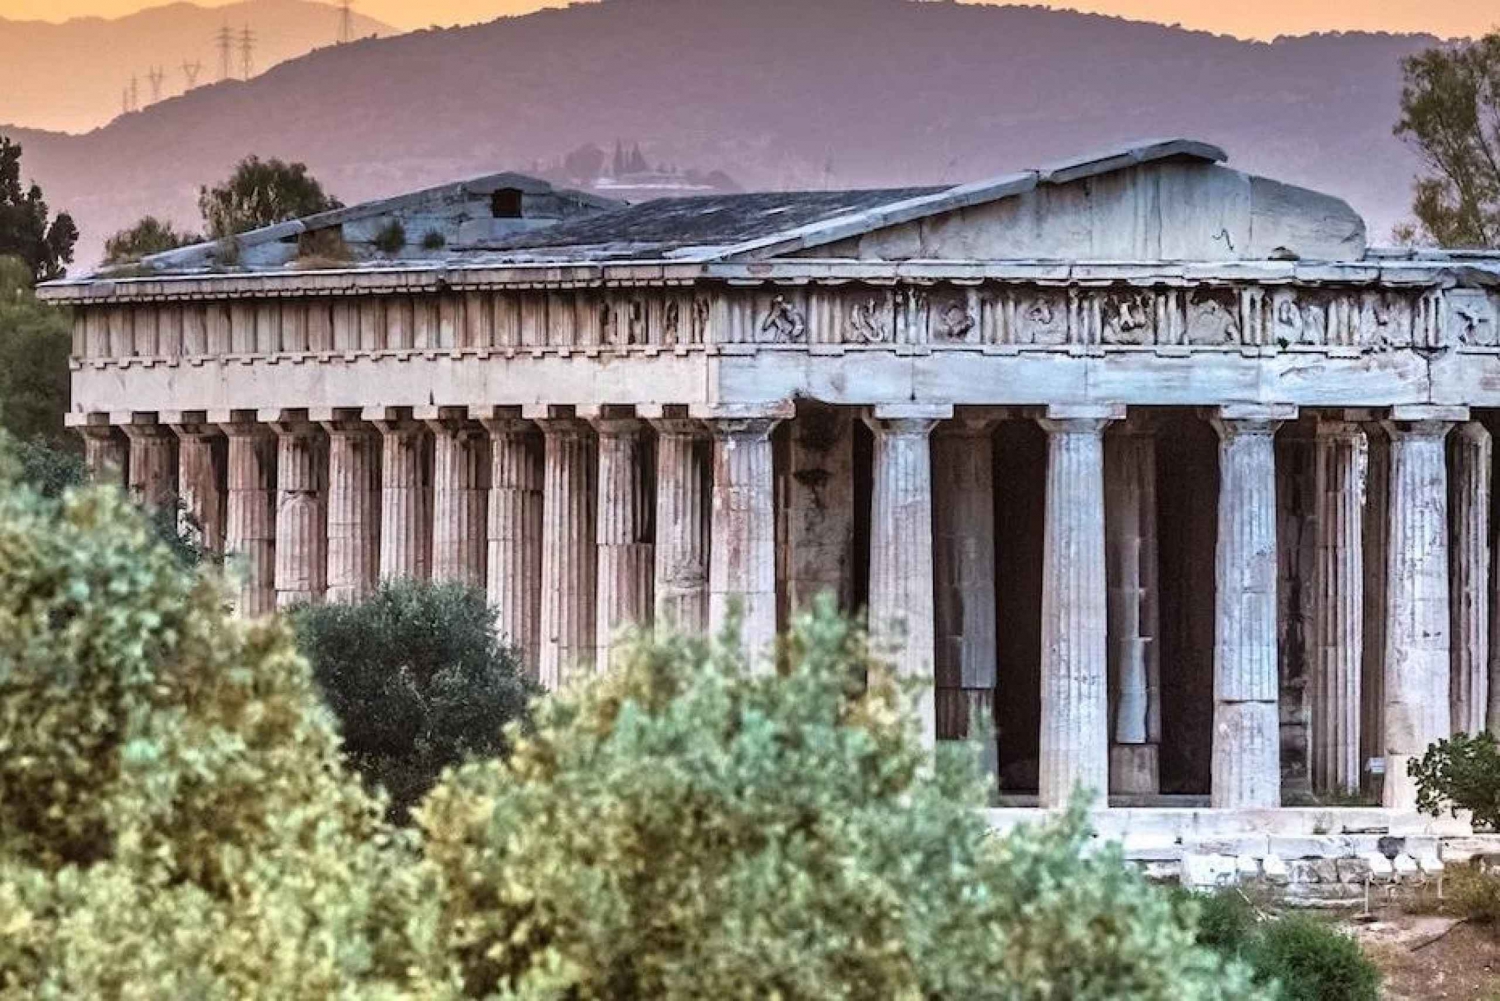 Athen: Den gamle Agora i Athen - selvguidet audiotur